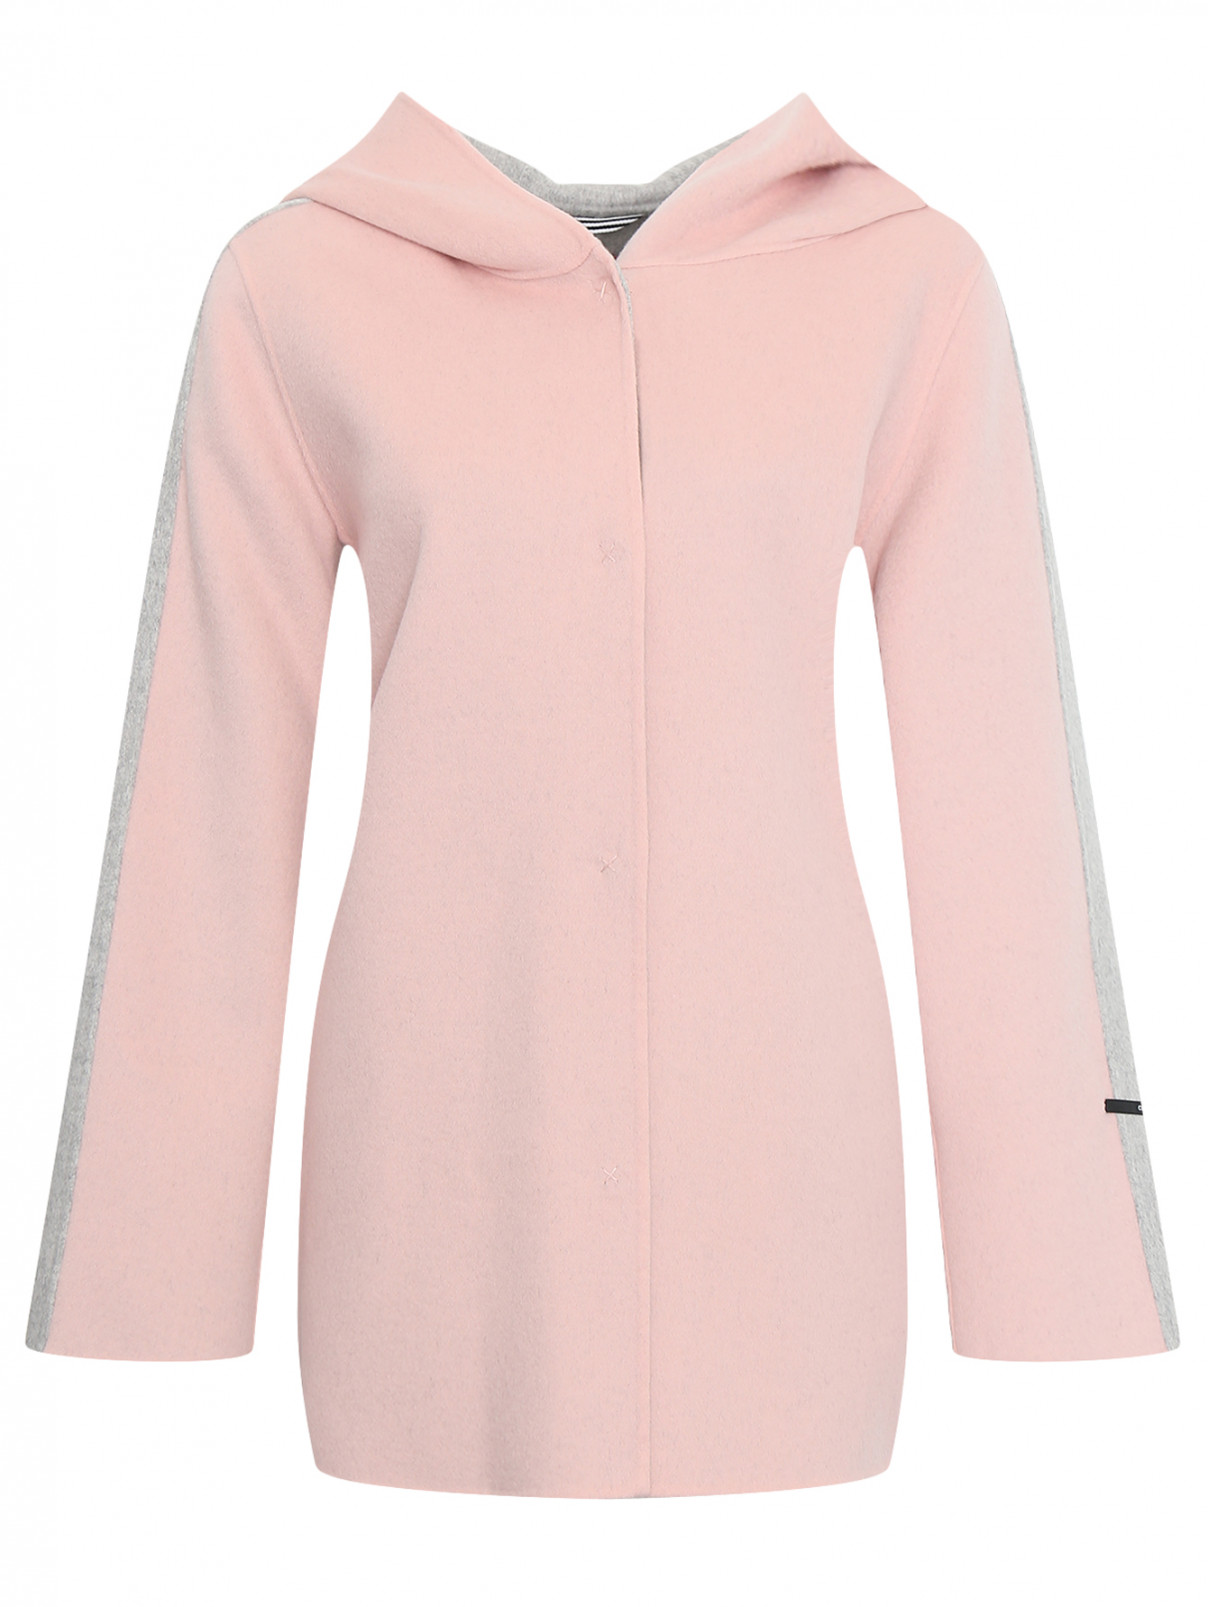 Полупальто из шерсти с капюшоном Marina Sport  –  Общий вид  – Цвет:  Розовый